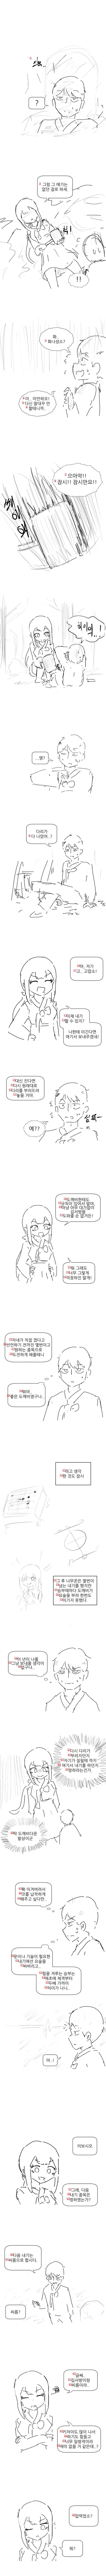 도깨비랑 내기하는 만화.manhwa